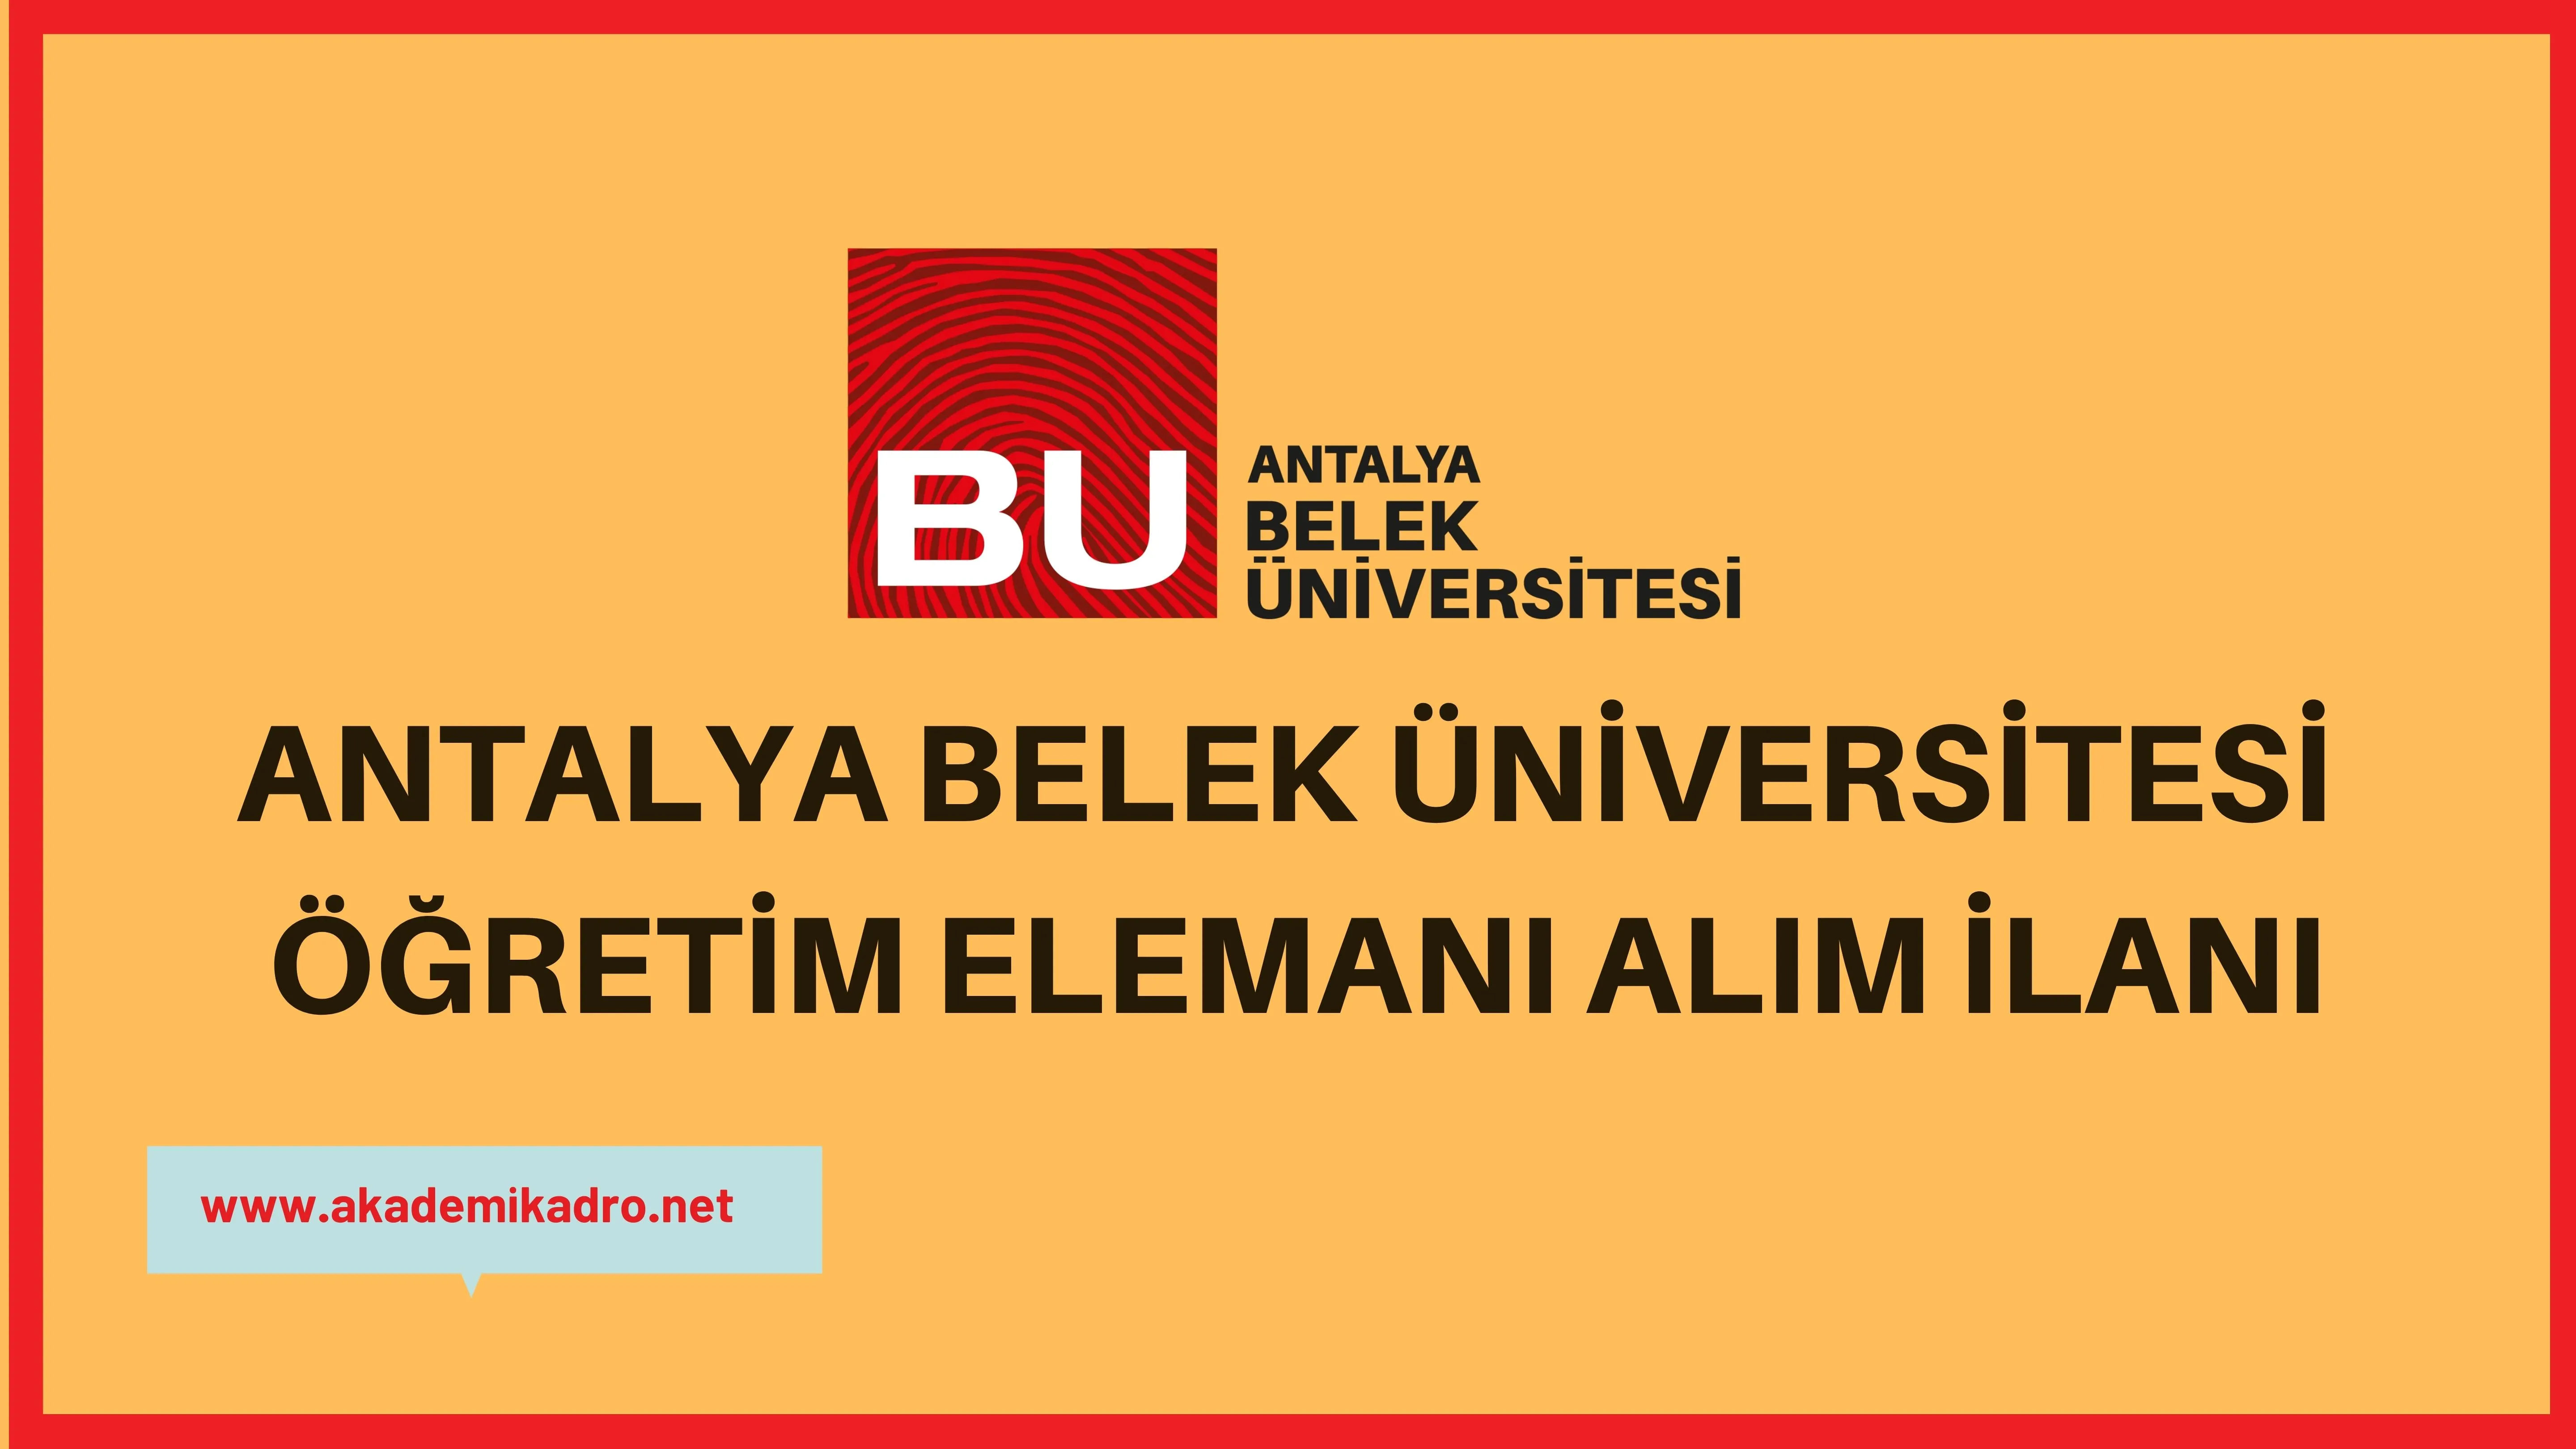 Antalya Belek Üniversitesi 2 Öğretim görevlisi, 4 Araştırma görevlisi ve 11 öğretim üyesi alacak.